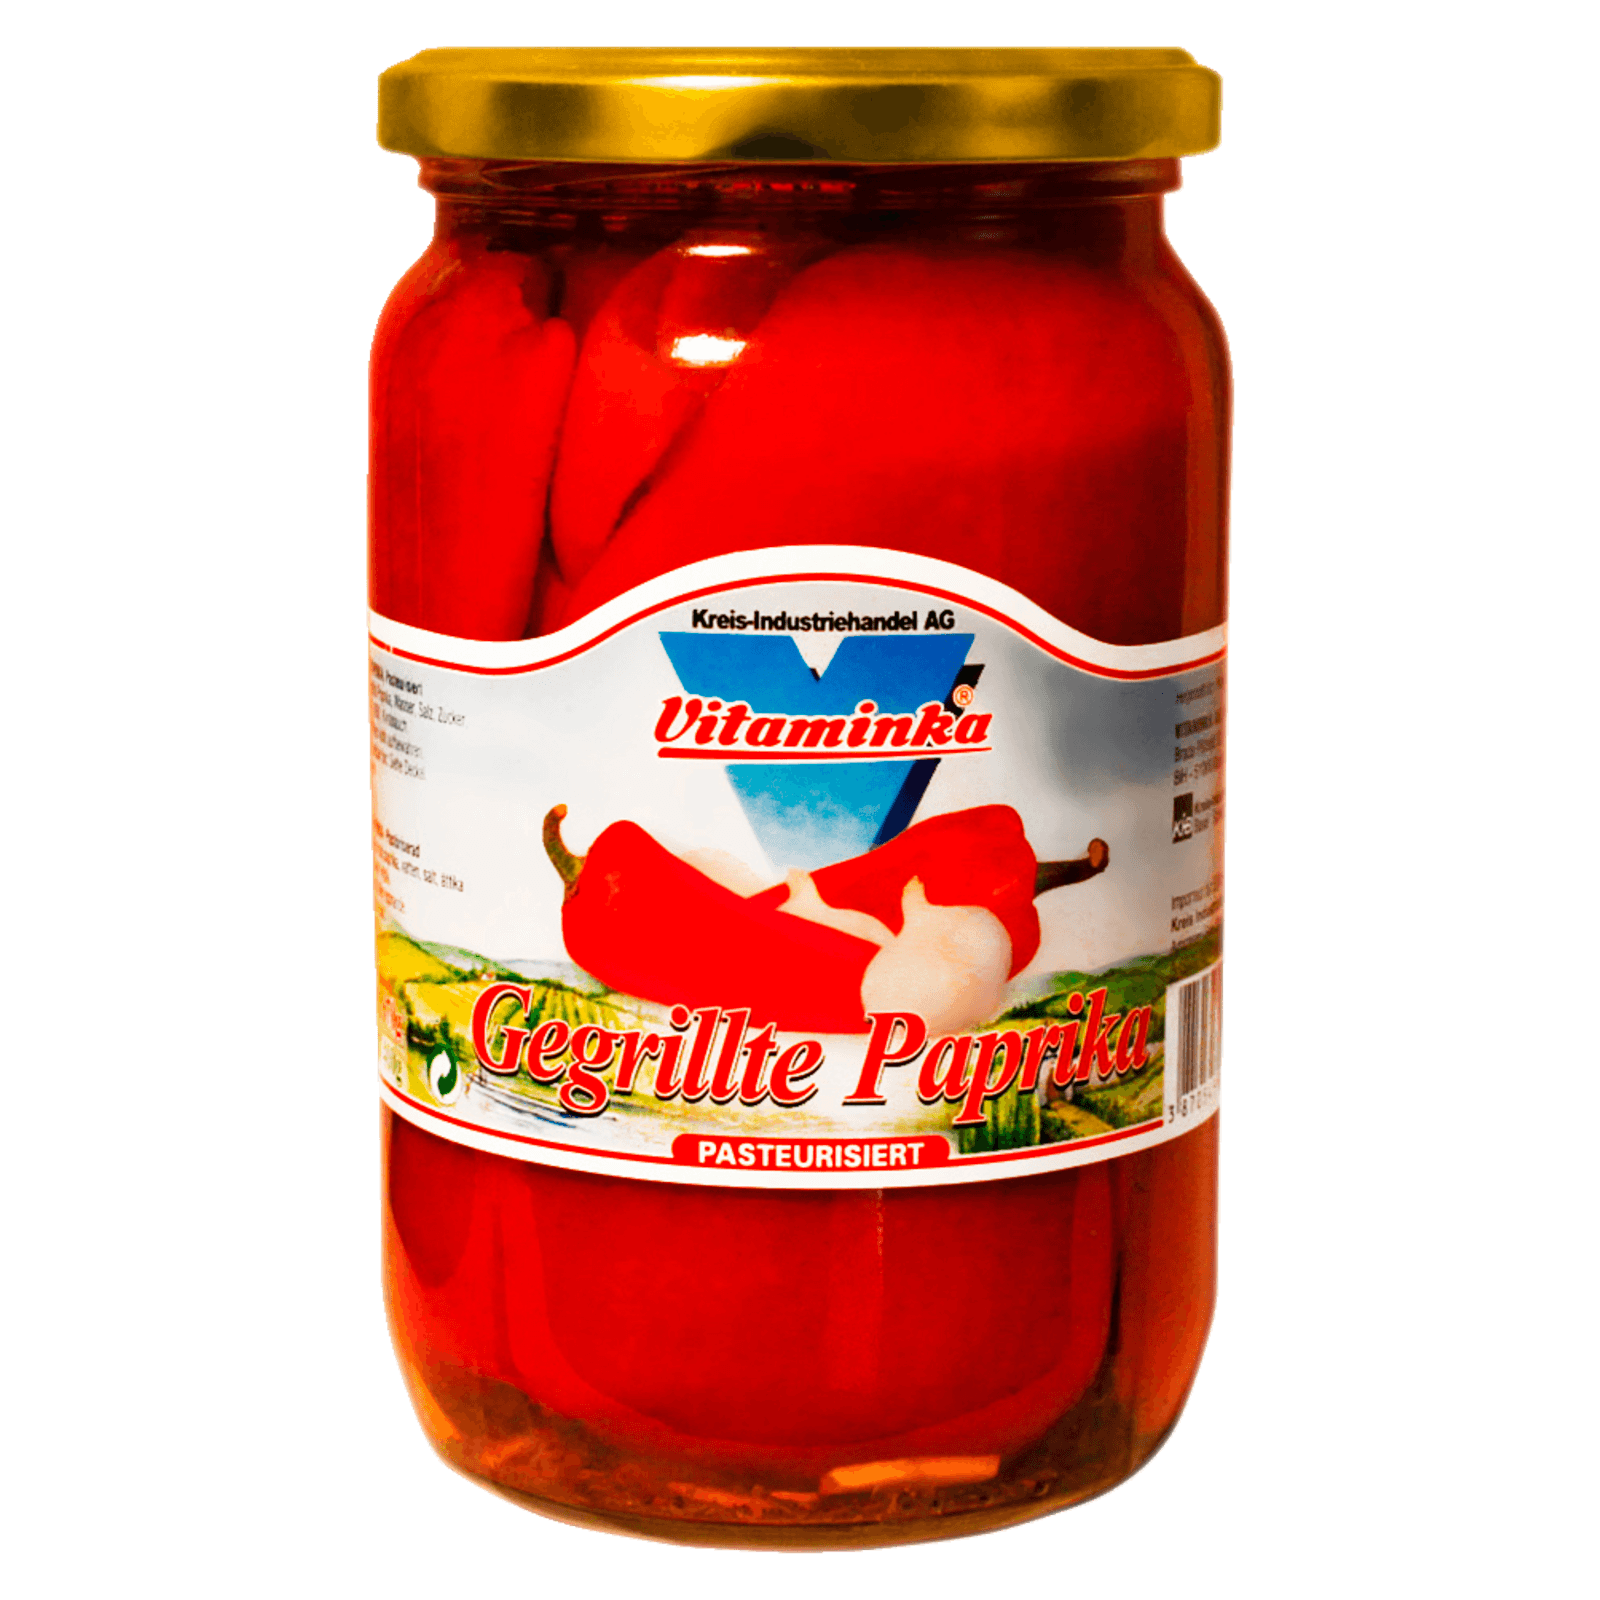 Vitaminka Gegrillte Paprika mit Knoblauch 670g  für 3.29 EUR